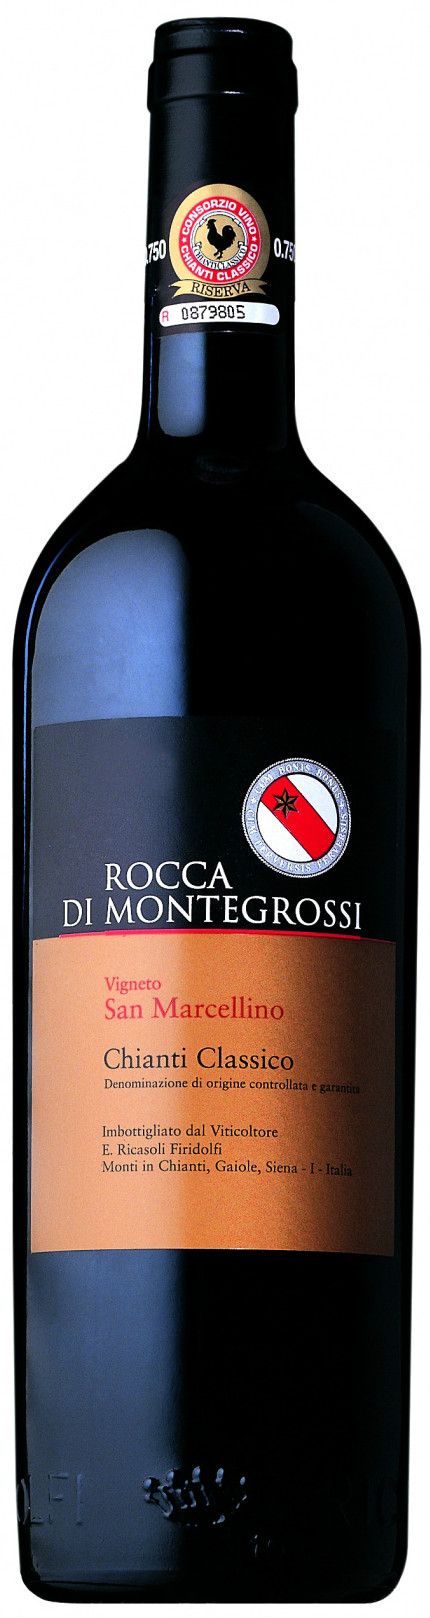 Rocca Di Montegrossi, Vigneto San Marcellino Chianti Classico, 2001